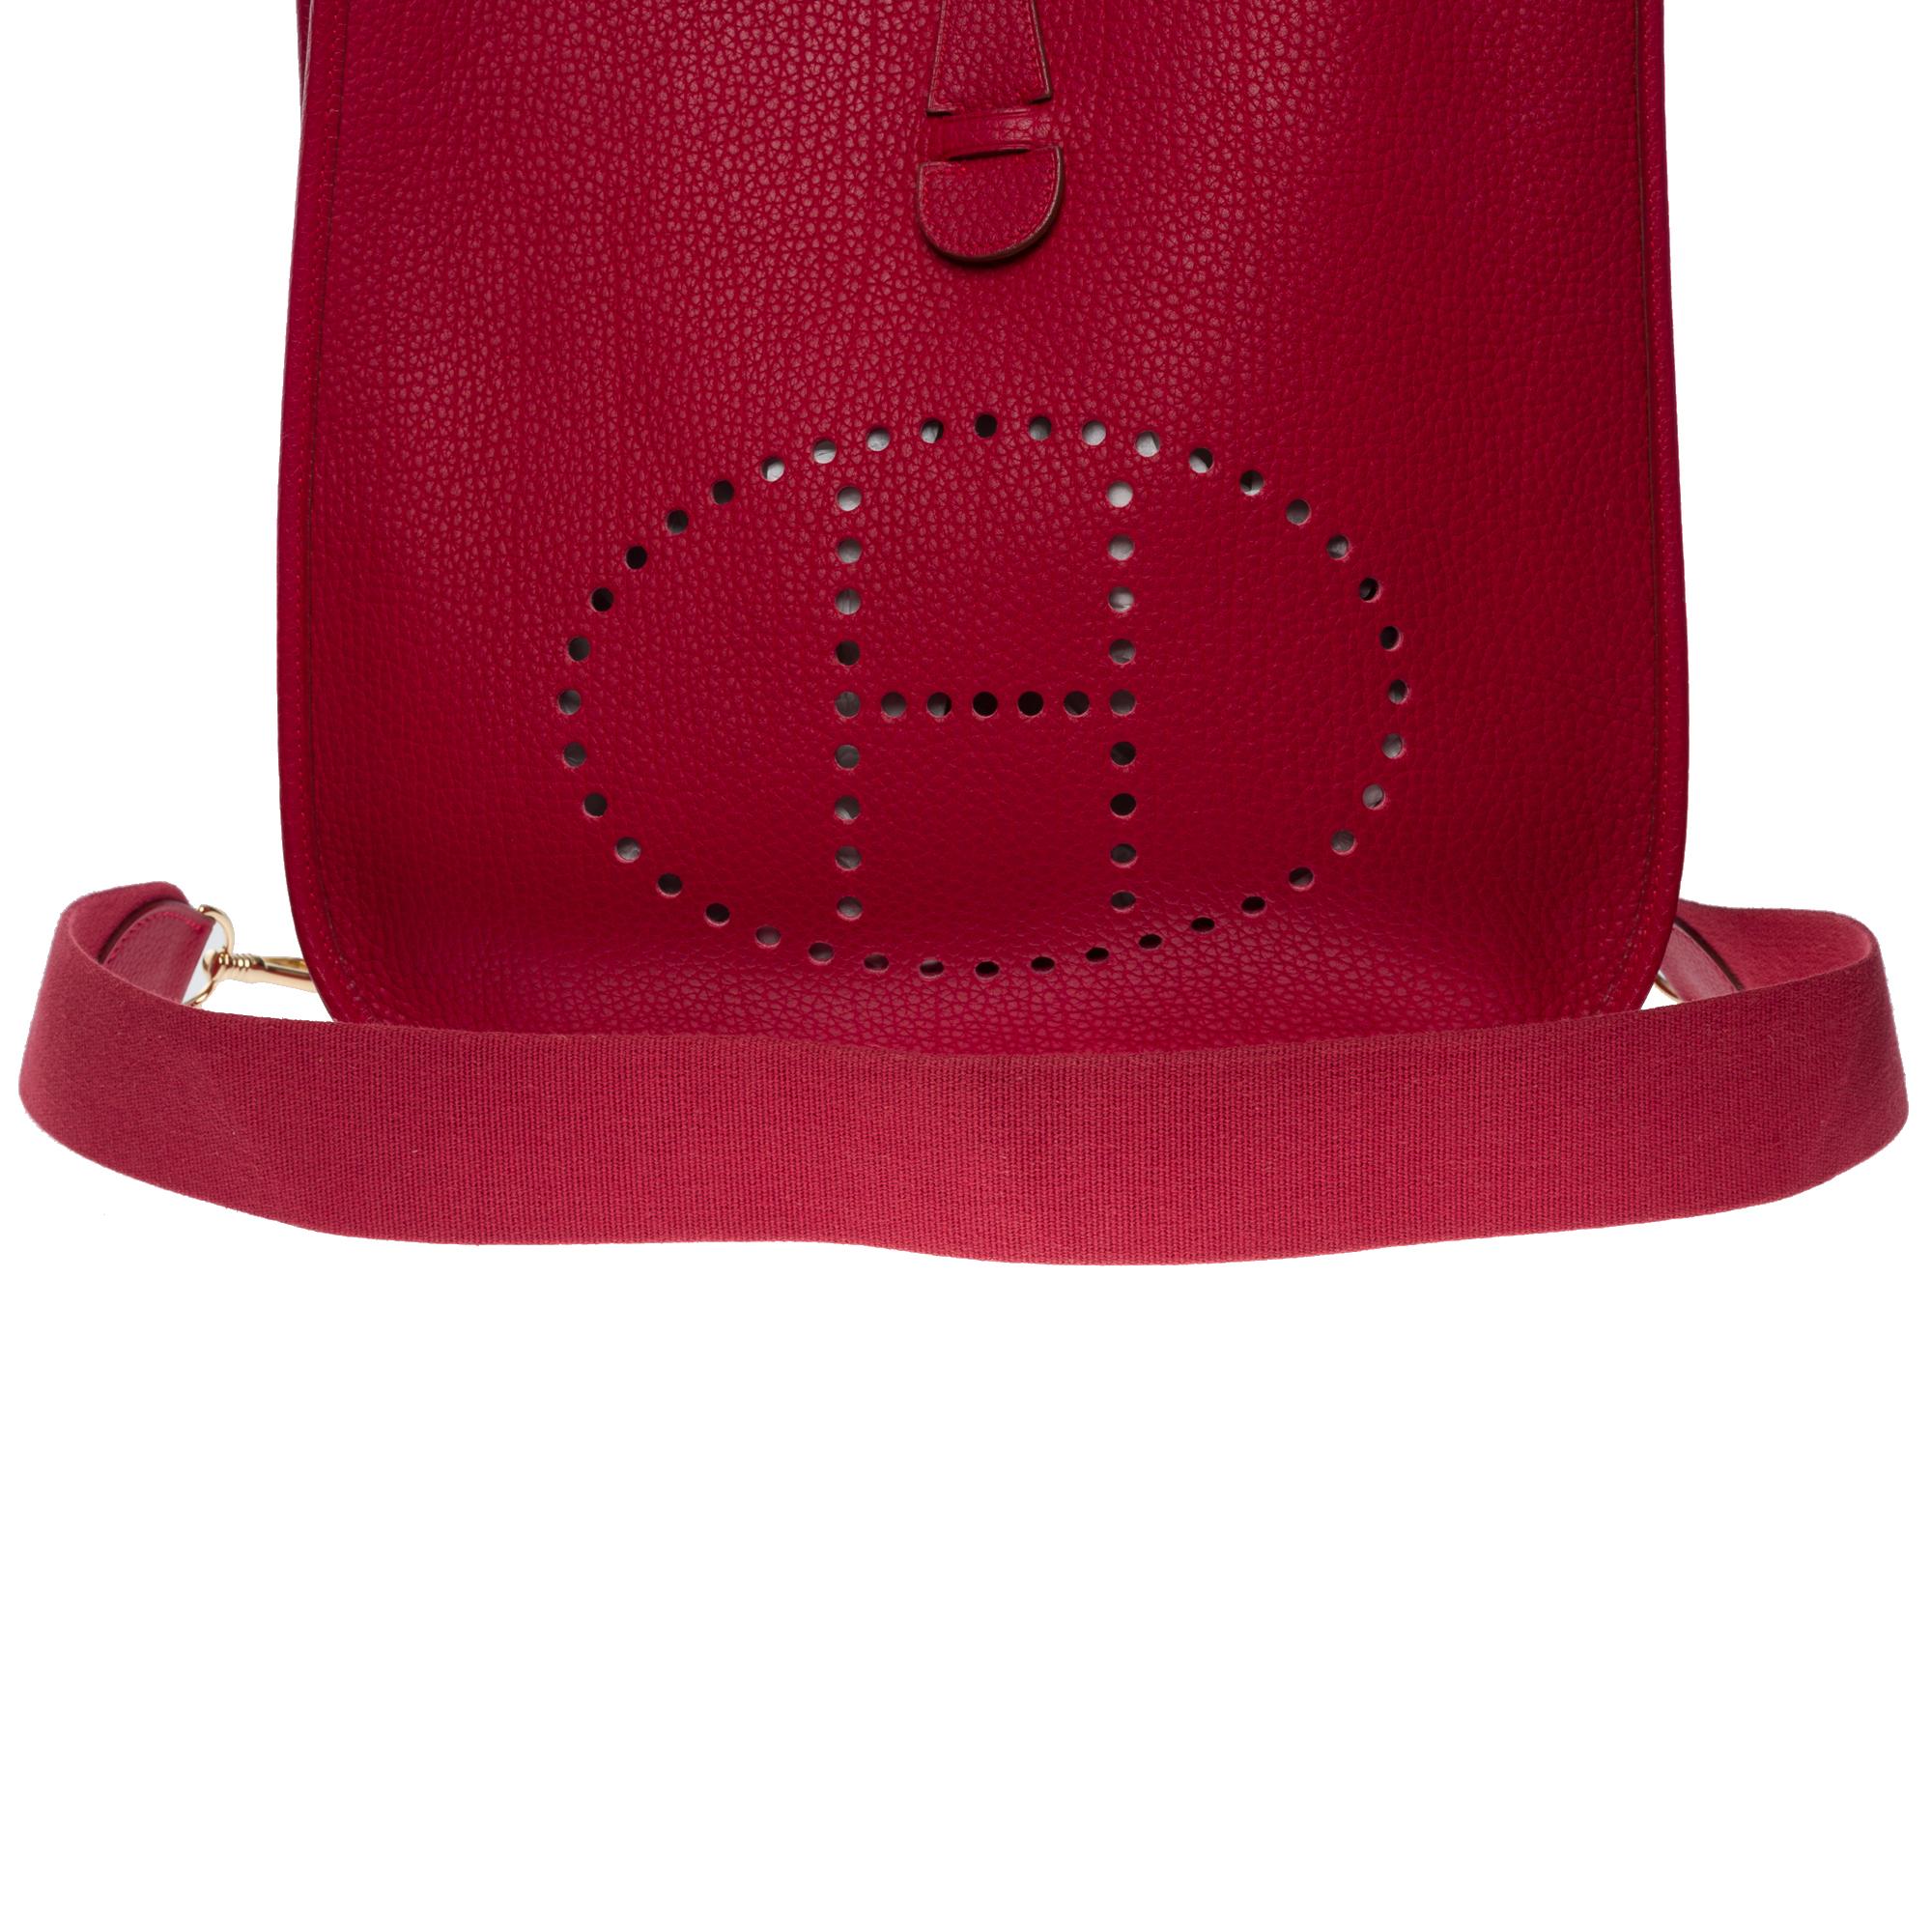 Gorgeous Hermès Evelyne 33 (GM)  shoulder bag in Red Casaque Togo leather, GHW For Sale 6